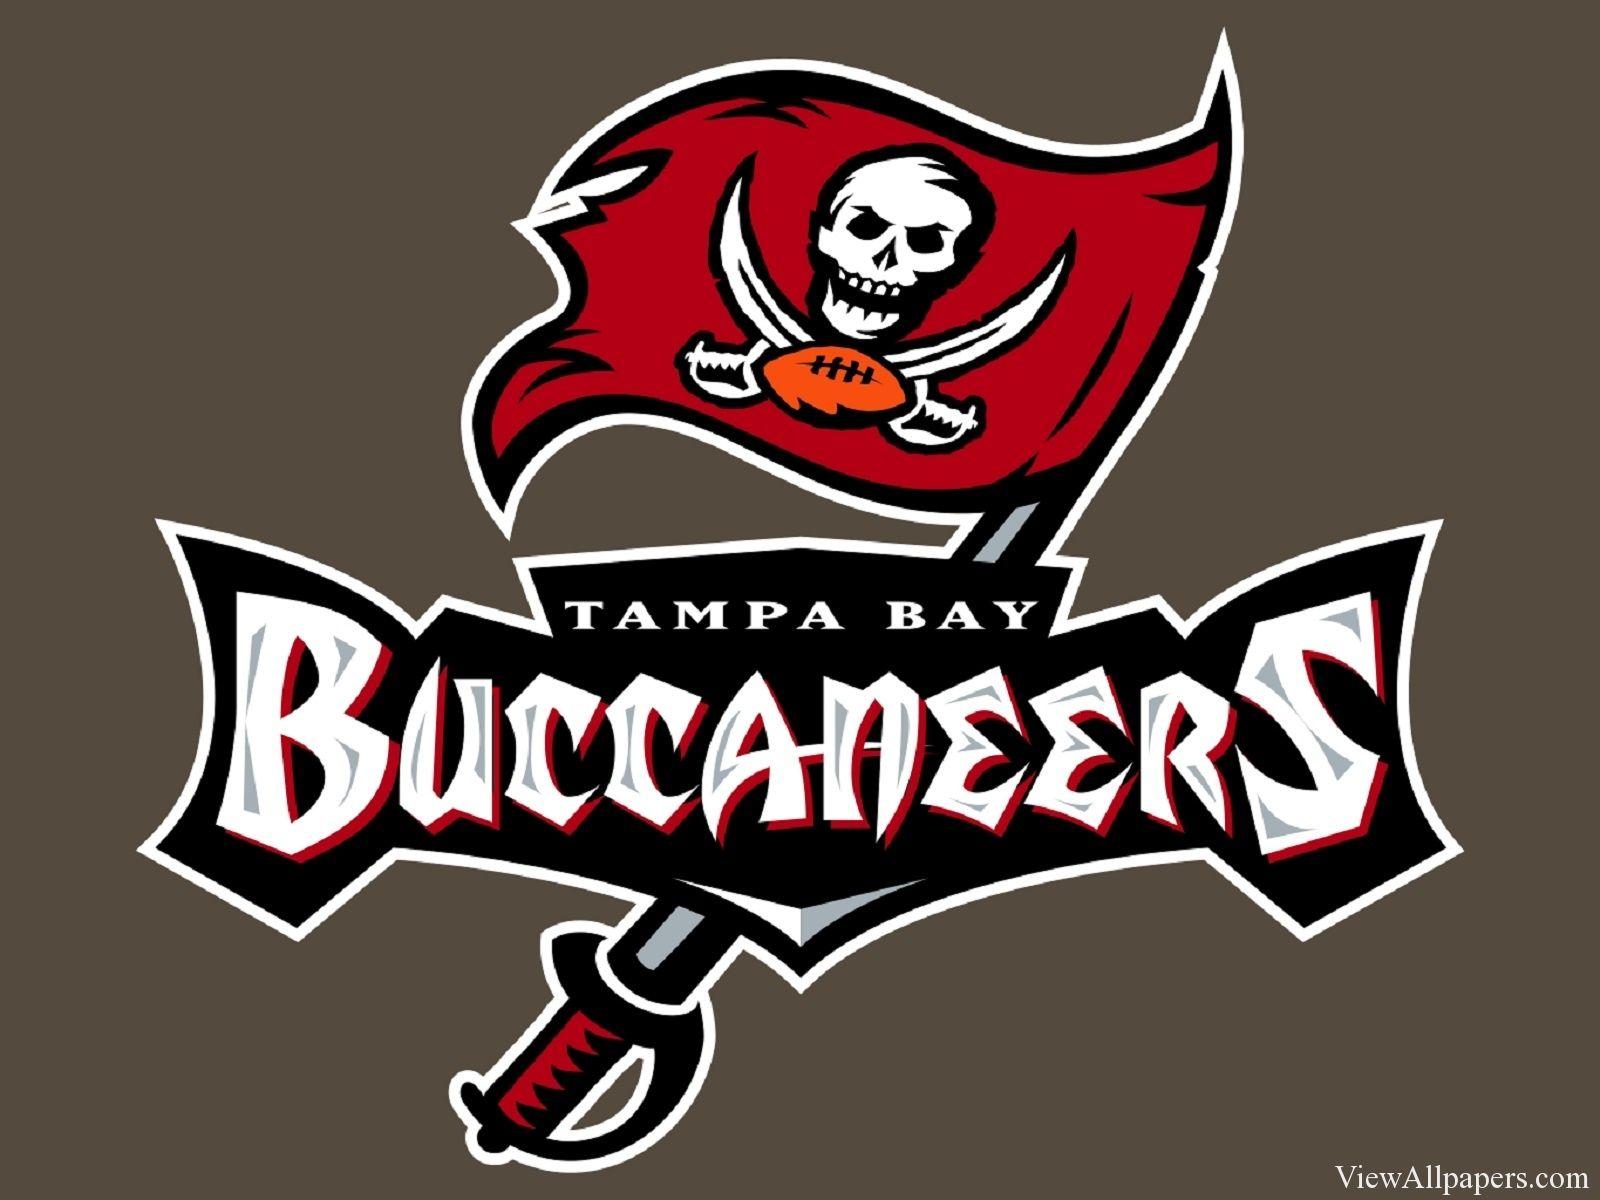 NFL Buccaneers Logo - Tampa Bay Buccaneers Logo | NFL | Tampa Bay Buccaneers, NFL, Tampa ...